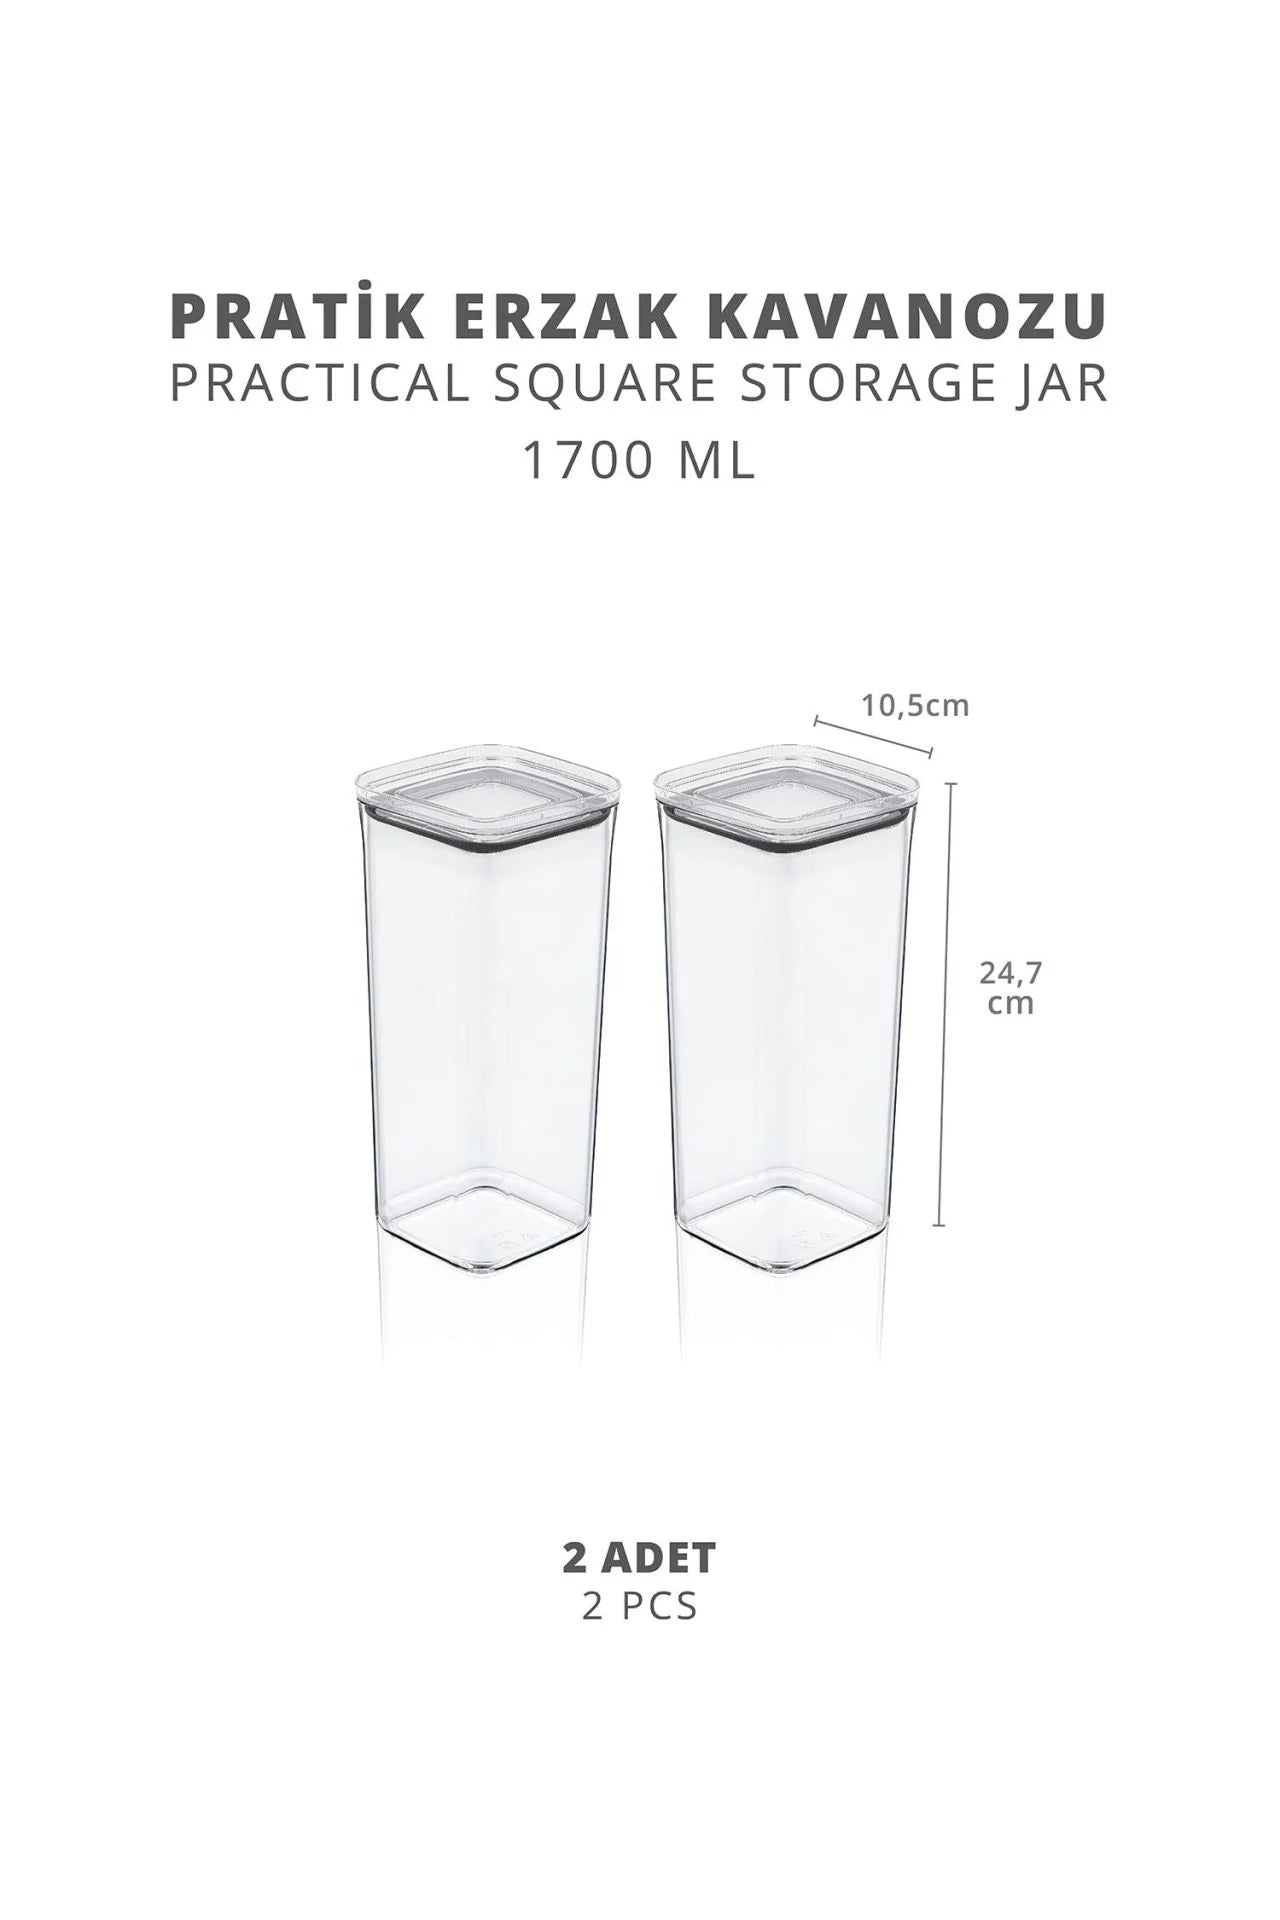 Ensemble de 2 bocaux carrés pratiques sous vide pour provisions